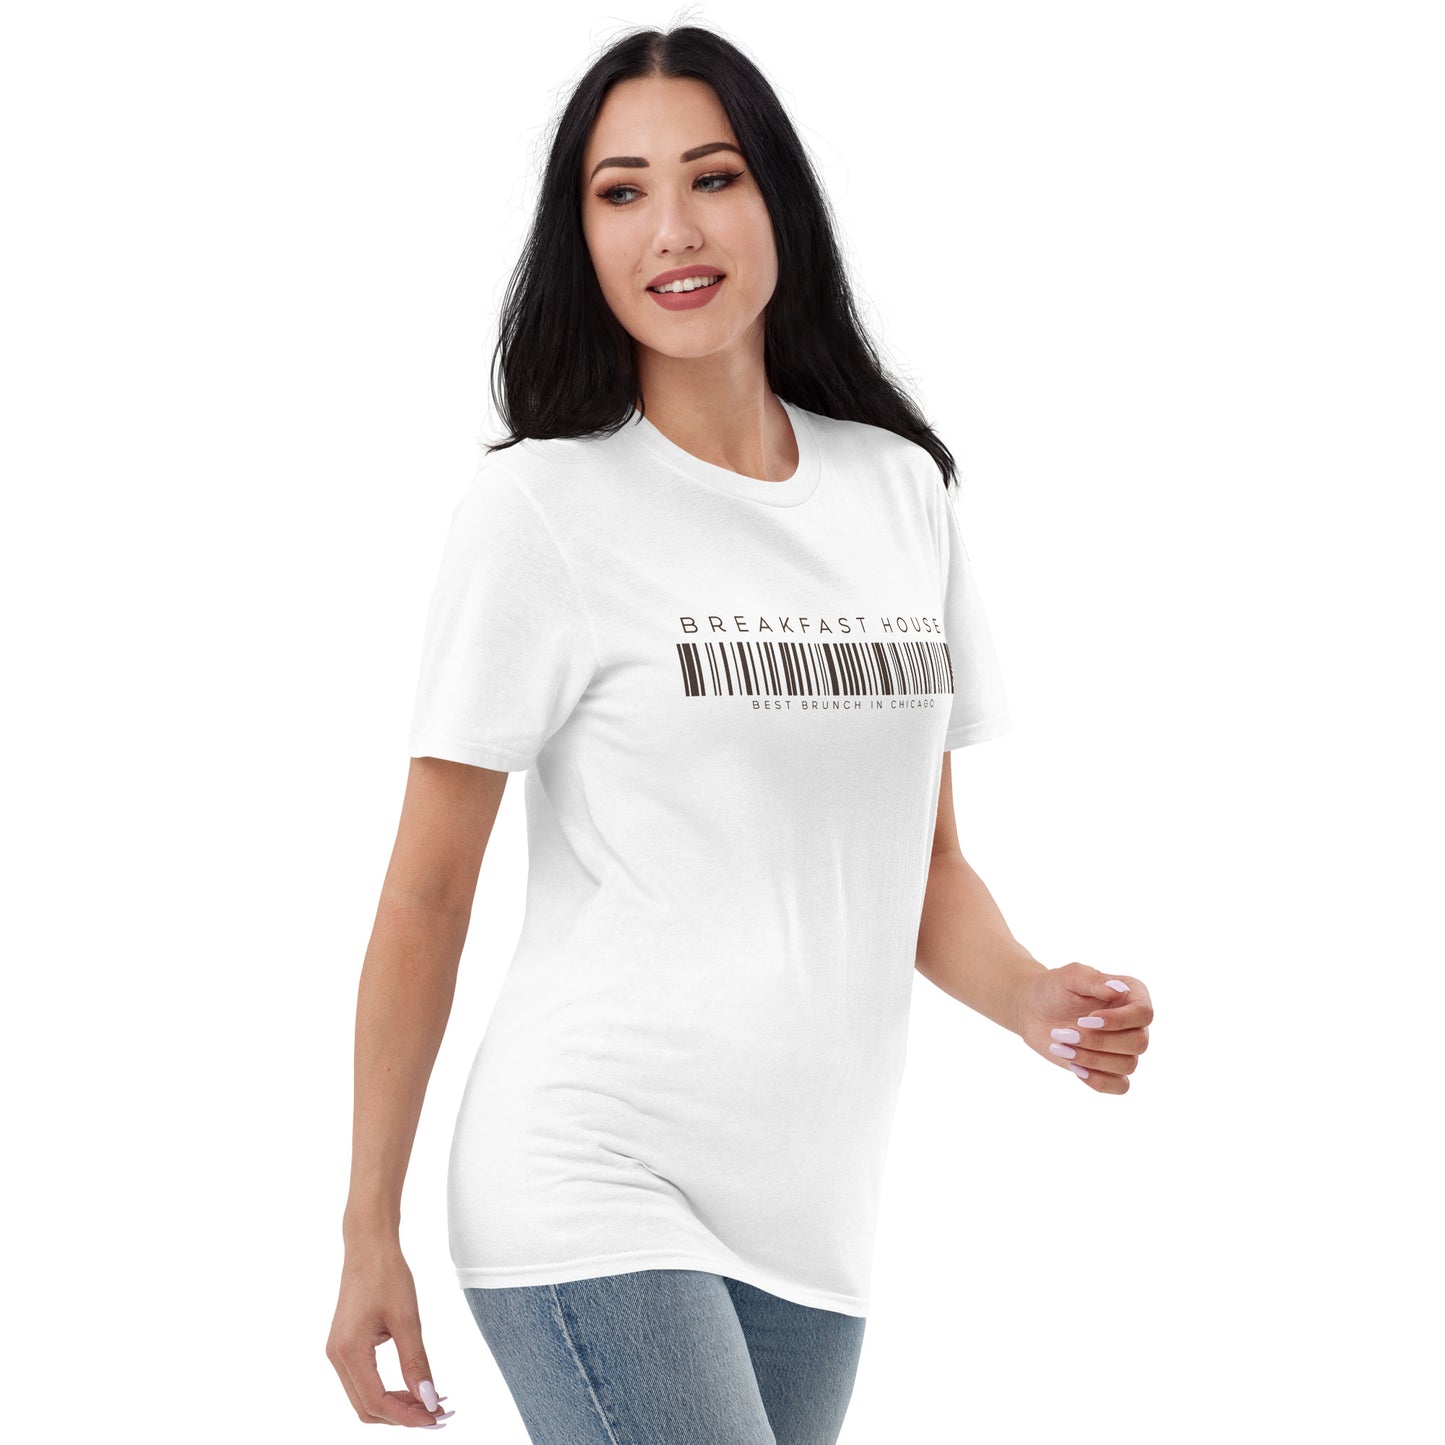 BH Barcode Short-Sleeve T-Shirt